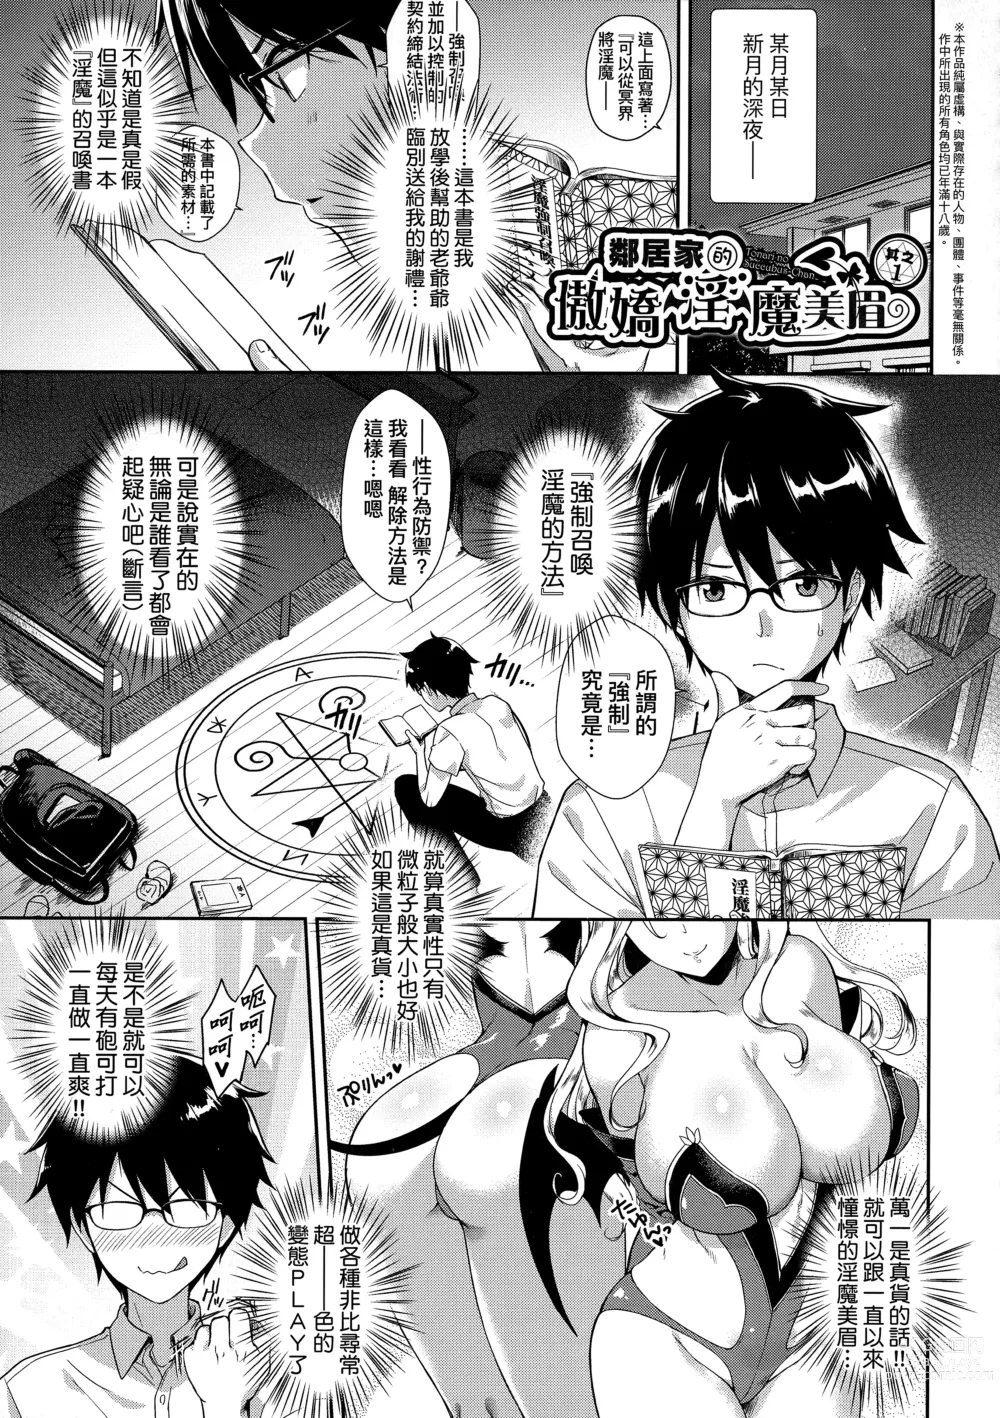 Page 28 of manga 鄰居家的傲嬌淫魔美眉 (decensored)